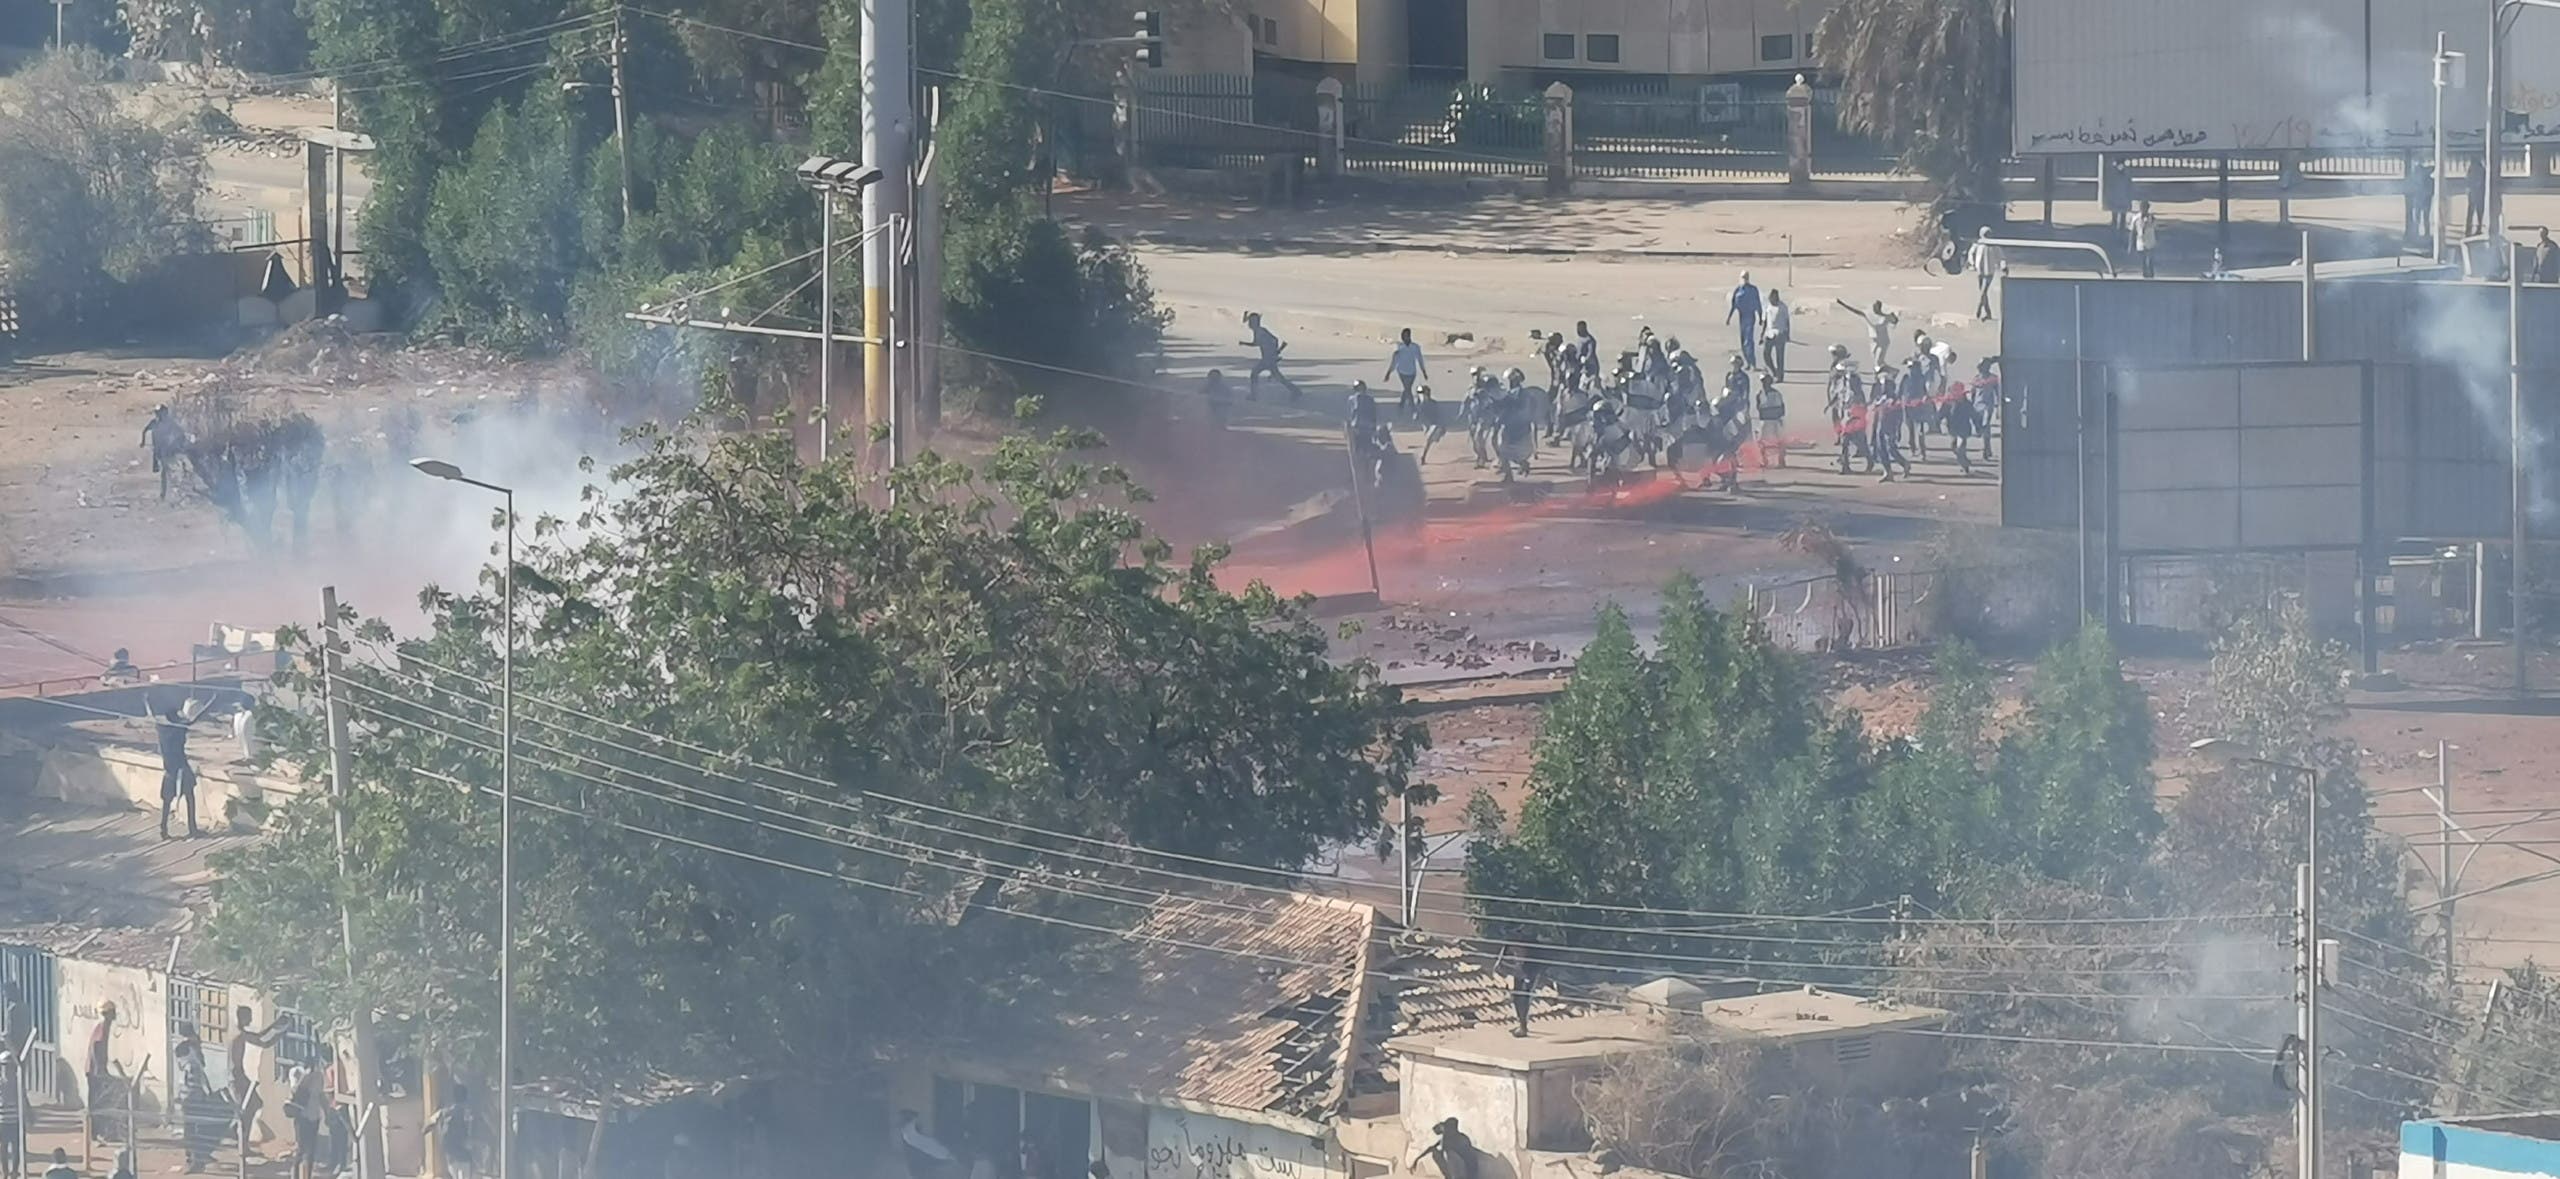 إطلاق غاز مسيل للدموع على المحتجين بالخرطوم الشهر الماضي